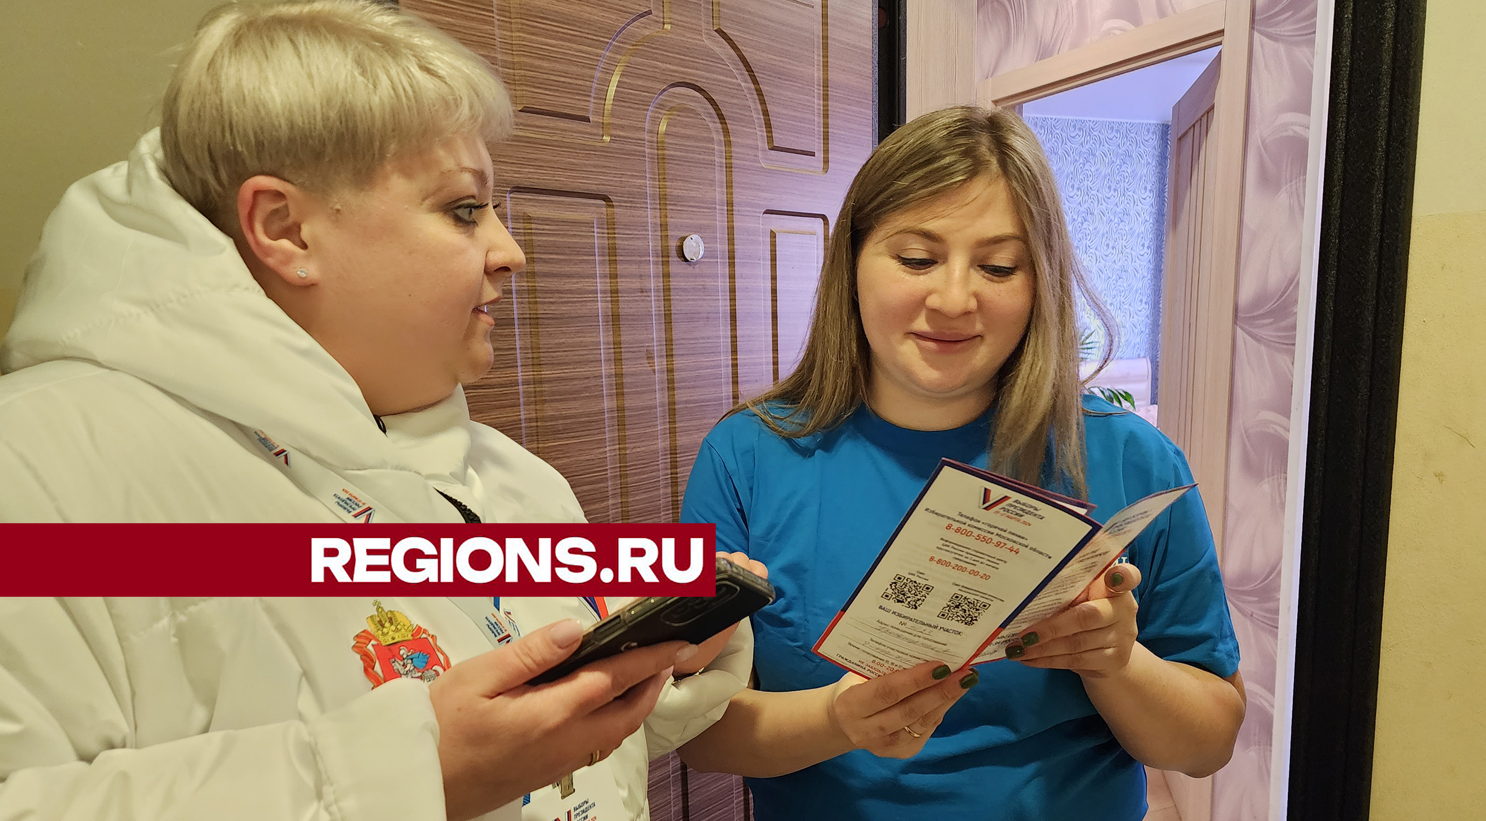 В Пушкино информаторы рассказали местным жителям, где находятся их избирательные участки